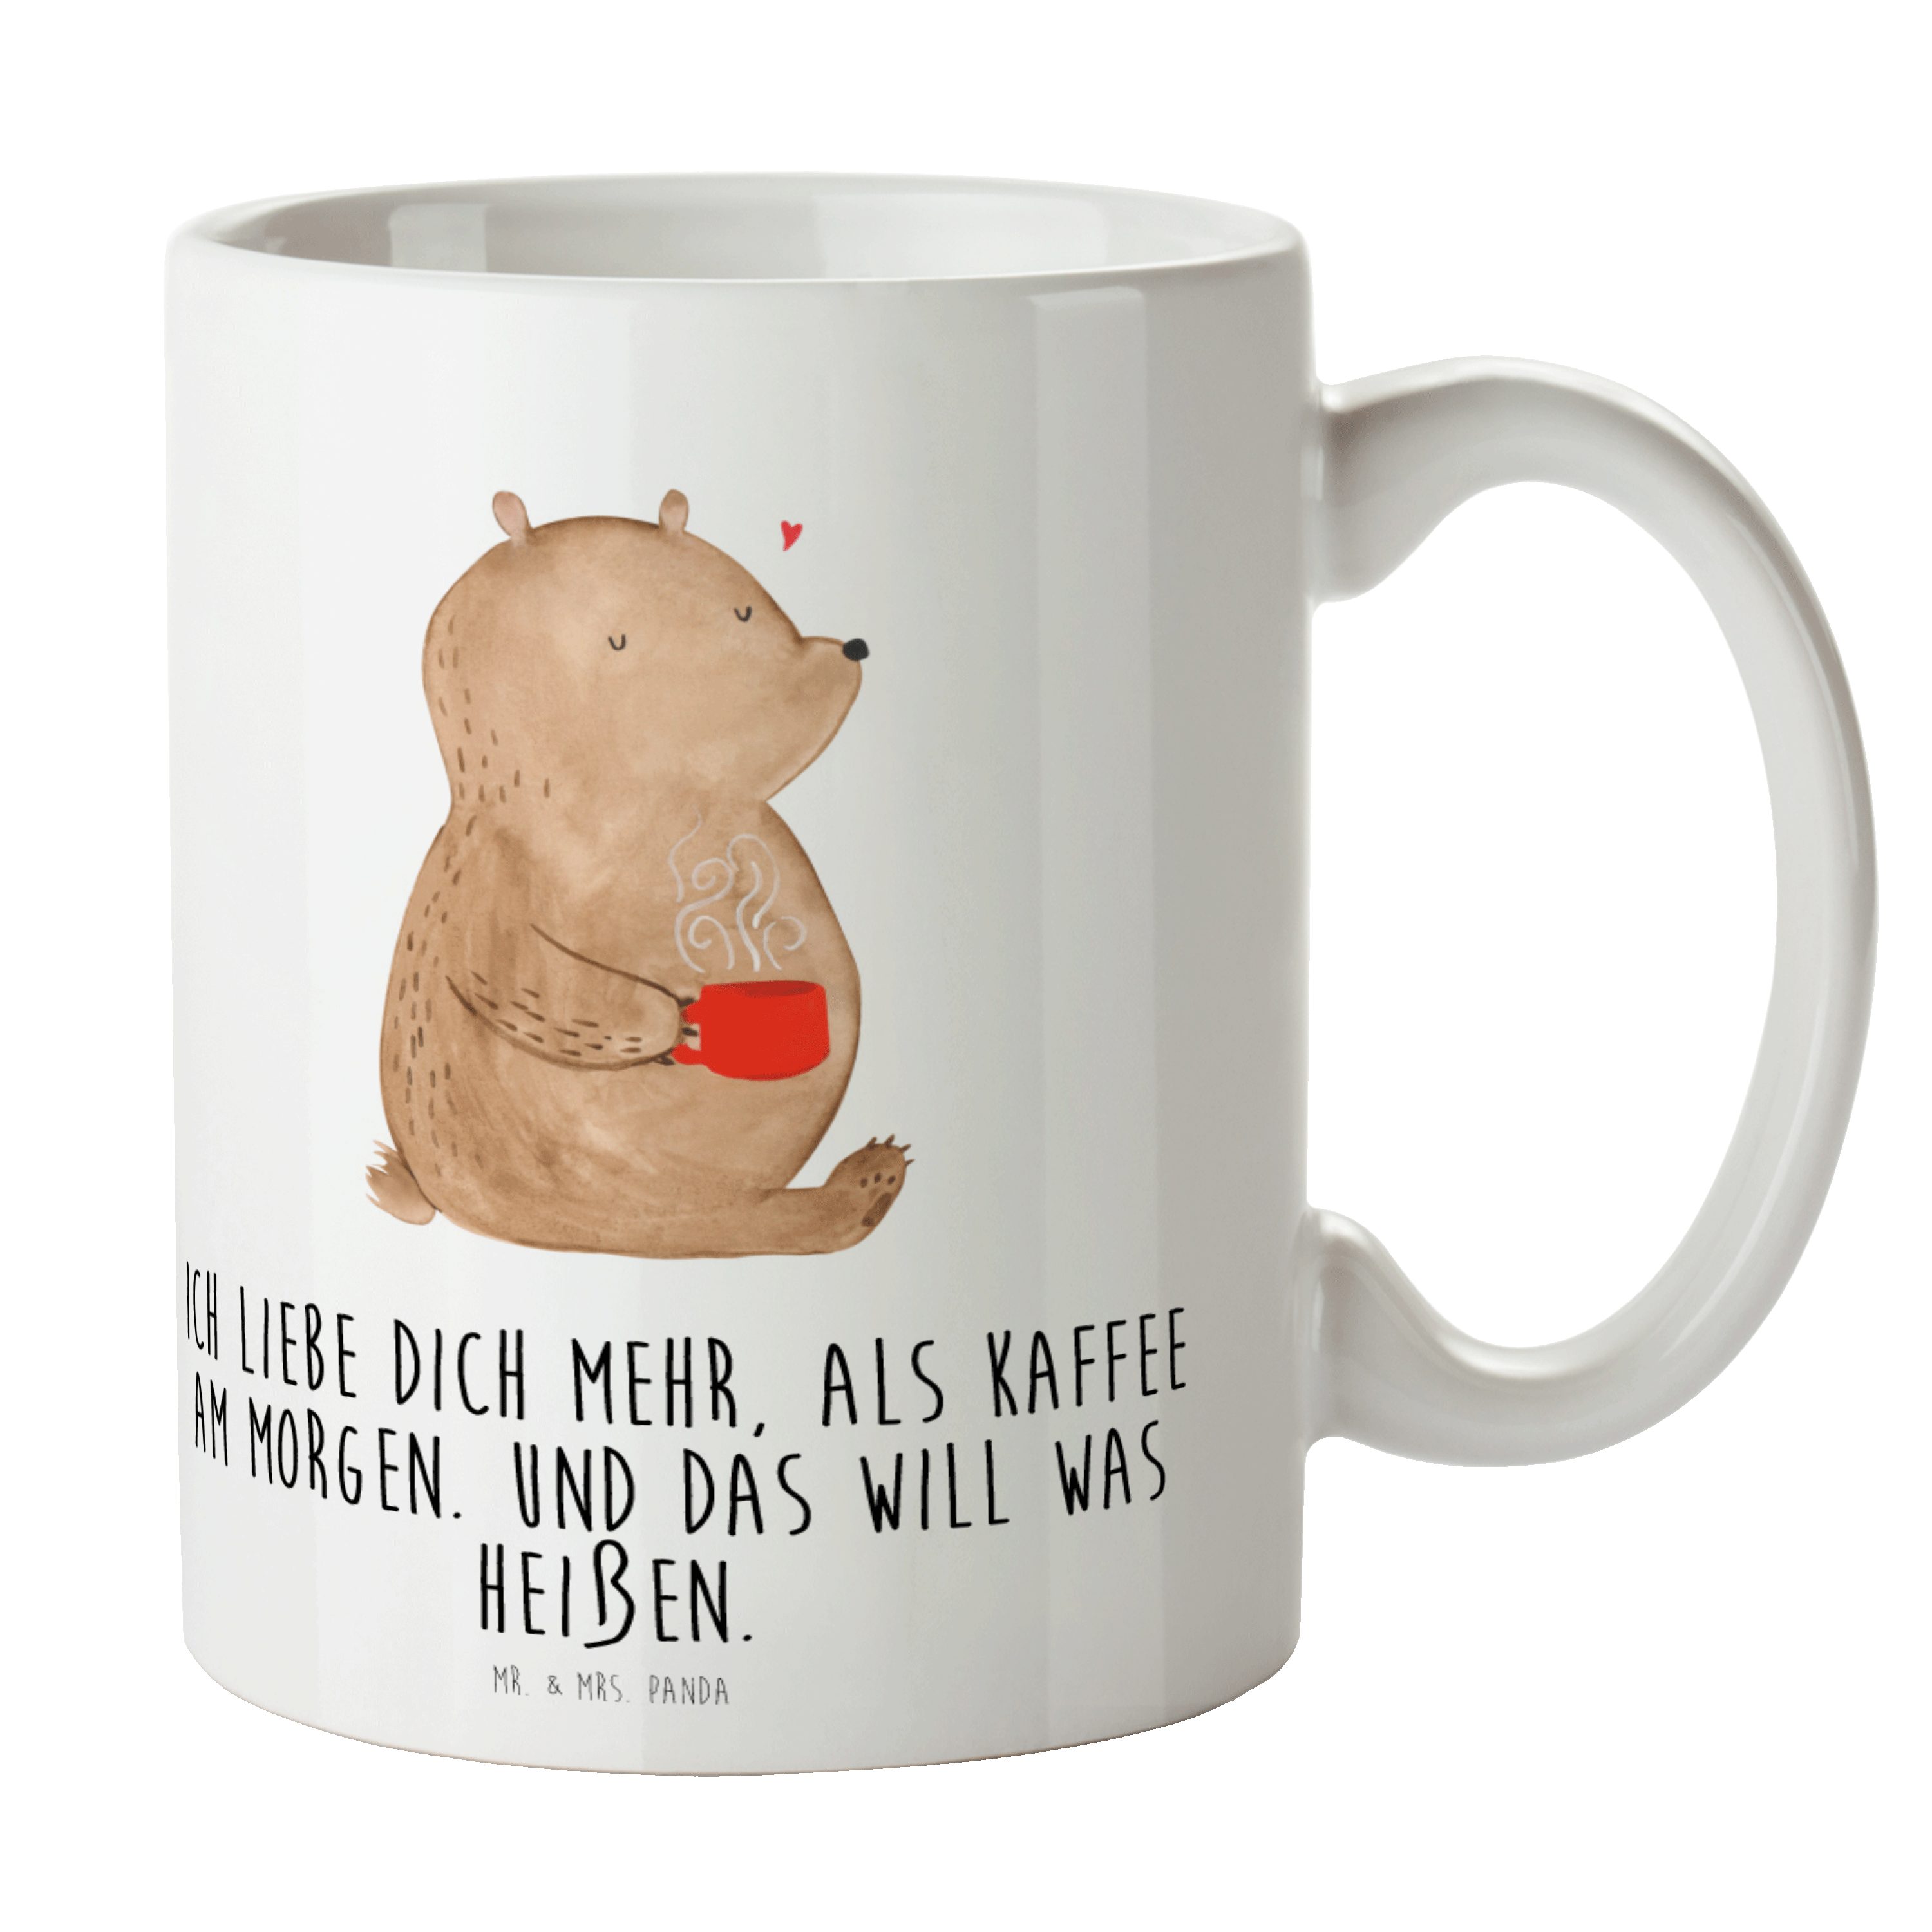 Mr. & Mrs. Panda Tasse Bär Morgenkaffee - Weiß - Geschenk, Liebesbeweis, Geschenk Tasse, Tas, Keramik